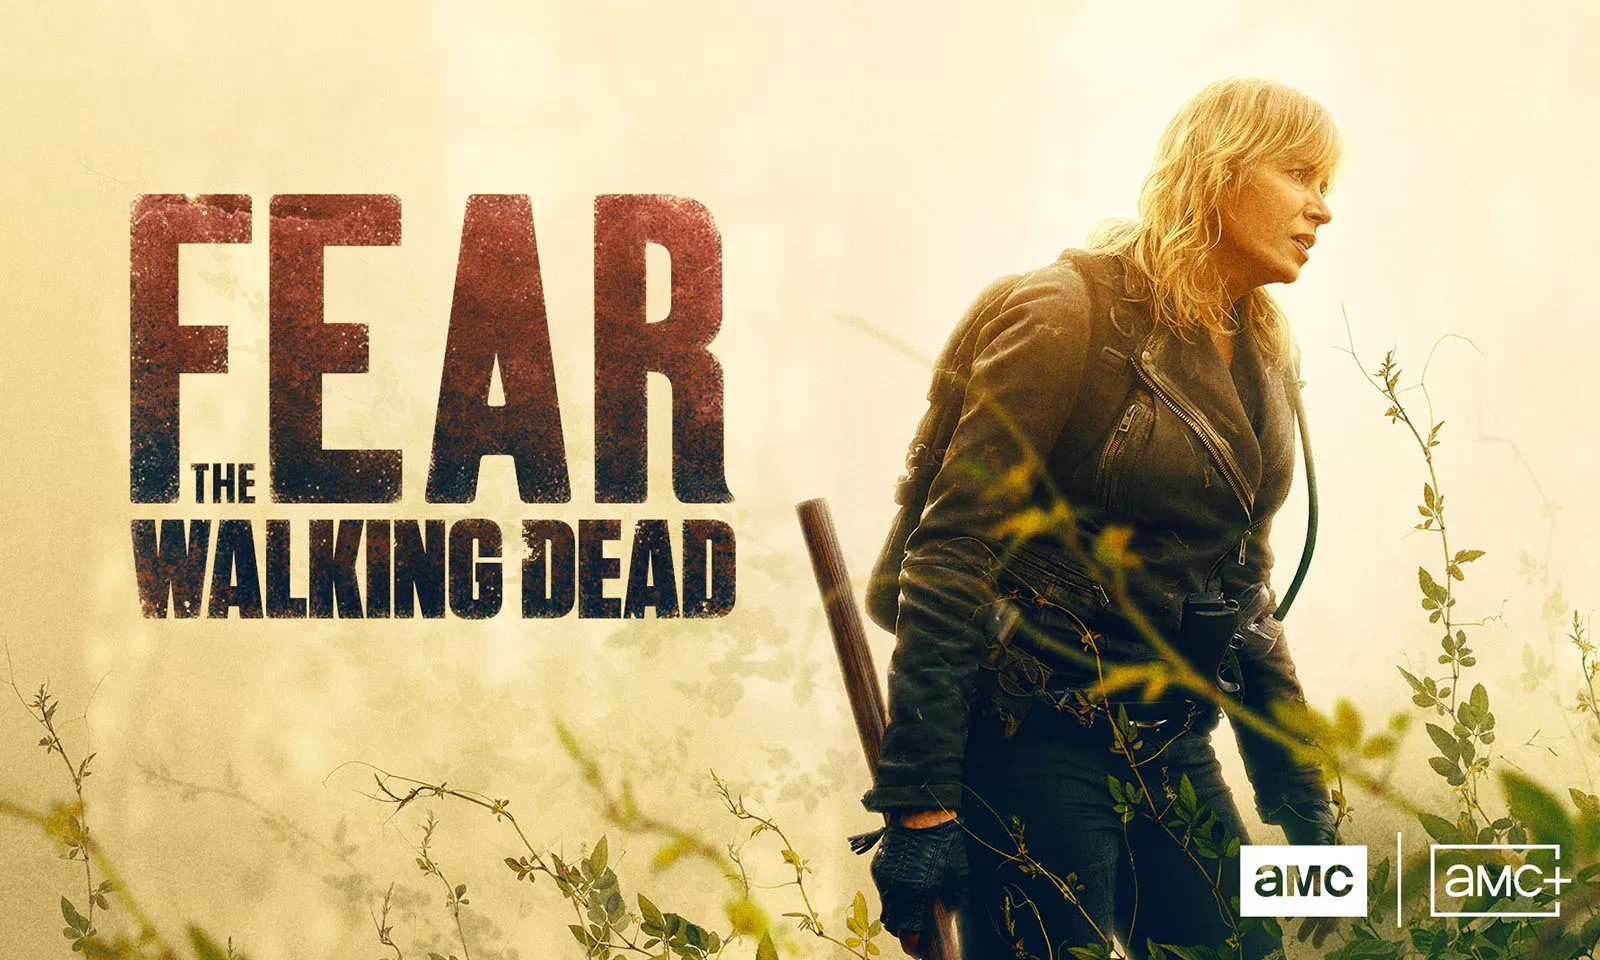 Assistir Fear the Walking Dead: 8x4 Online - Tua Serie